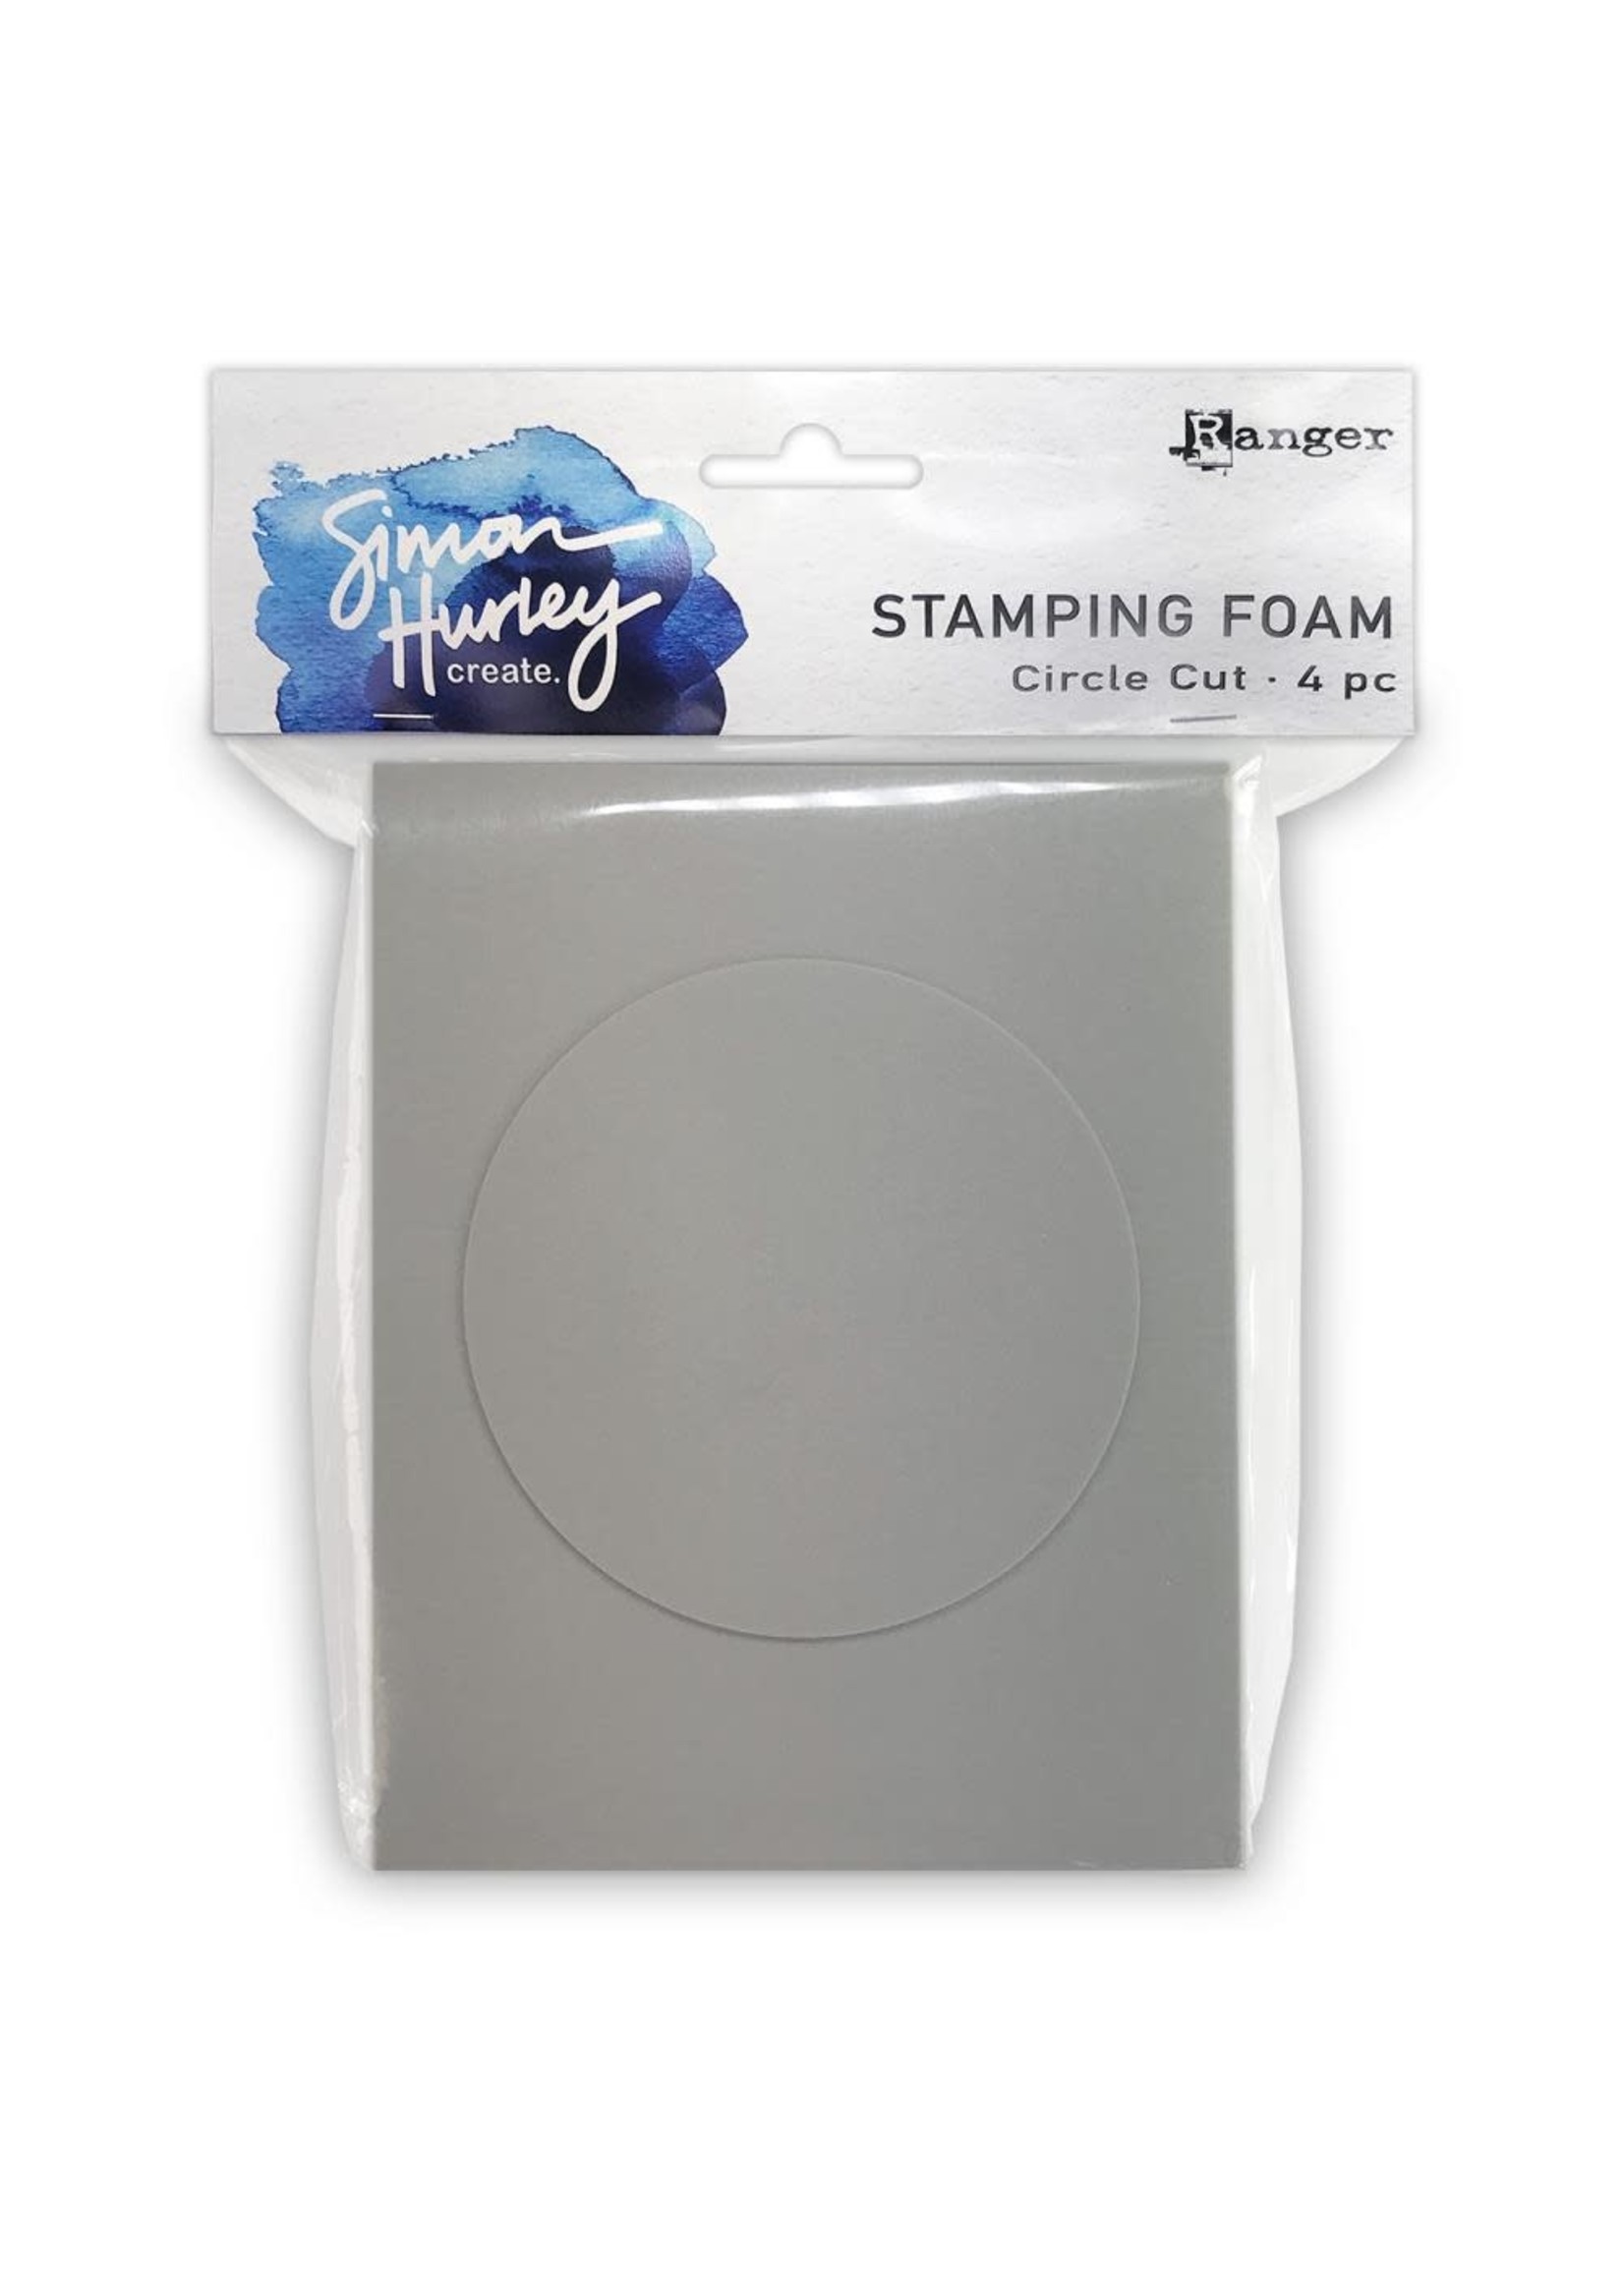 RANGER Stamping Foam Circle Cut